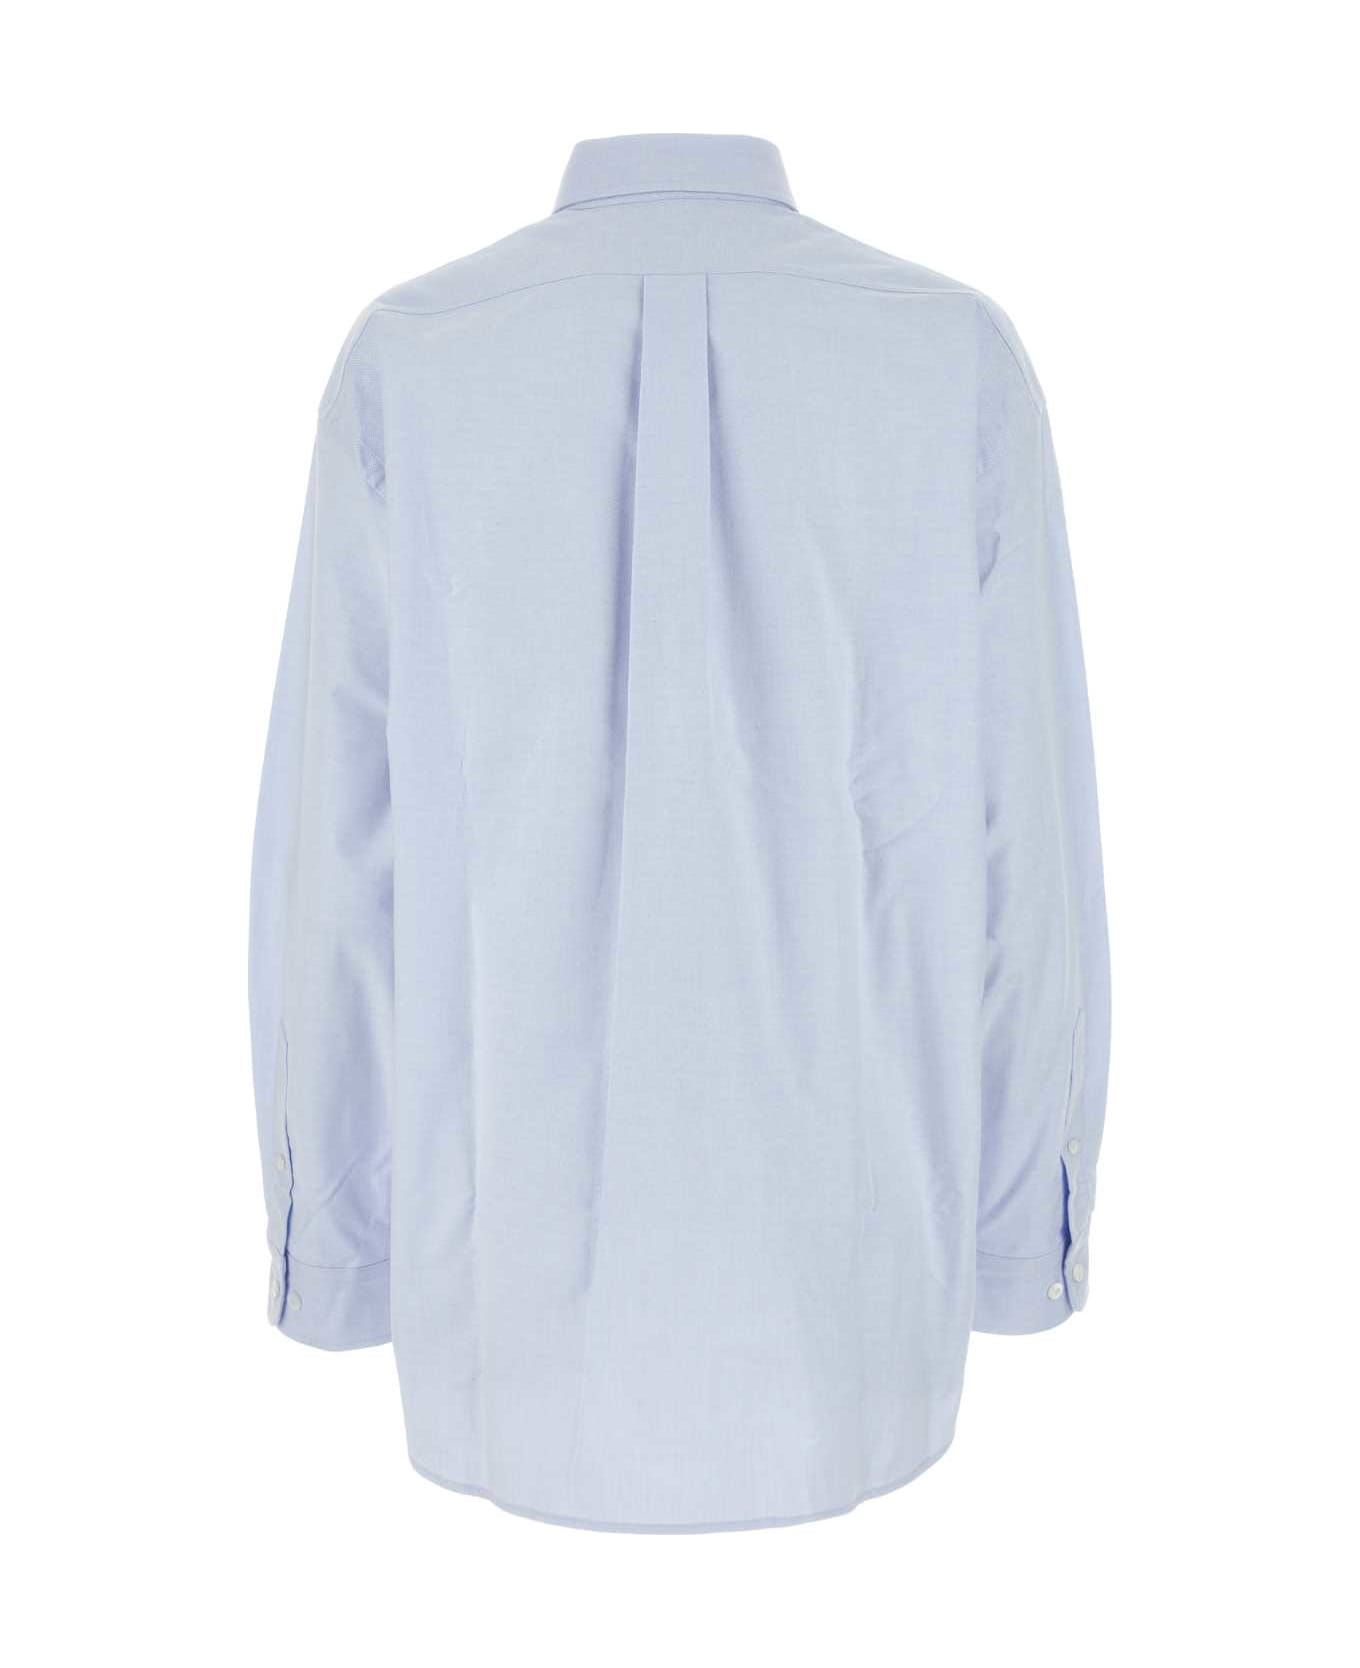 Prada Light Blue Oxford Oversize Shirt - CIELO